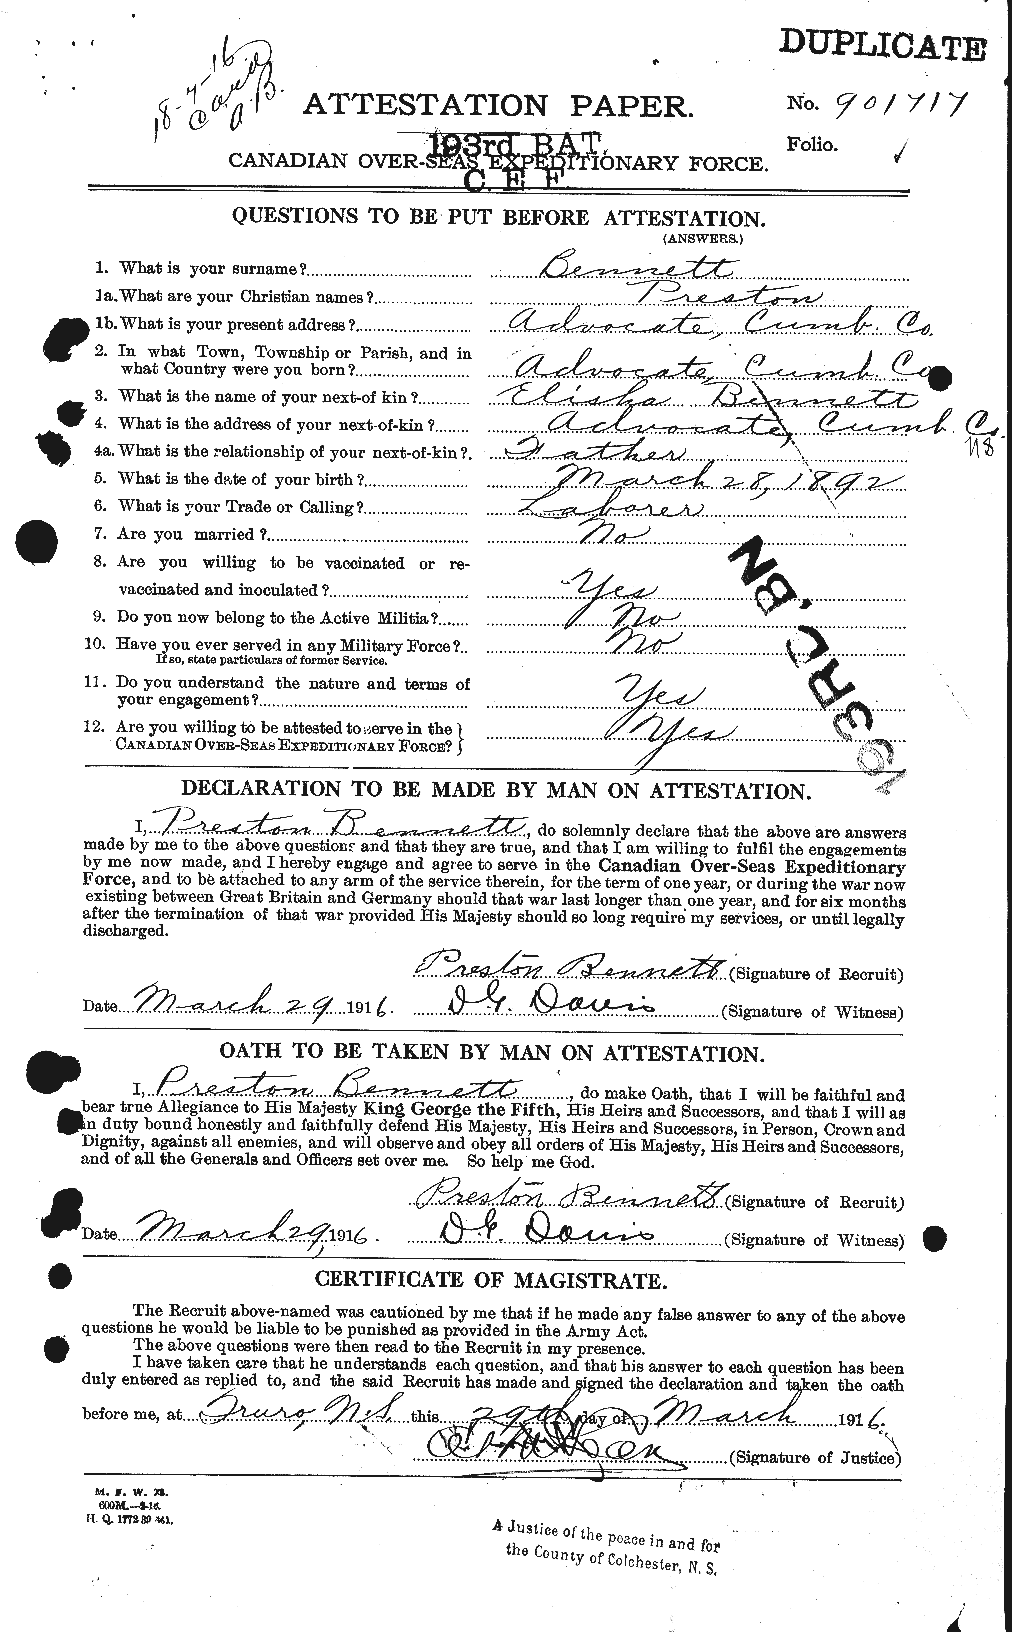 Dossiers du Personnel de la Première Guerre mondiale - CEC 238926a